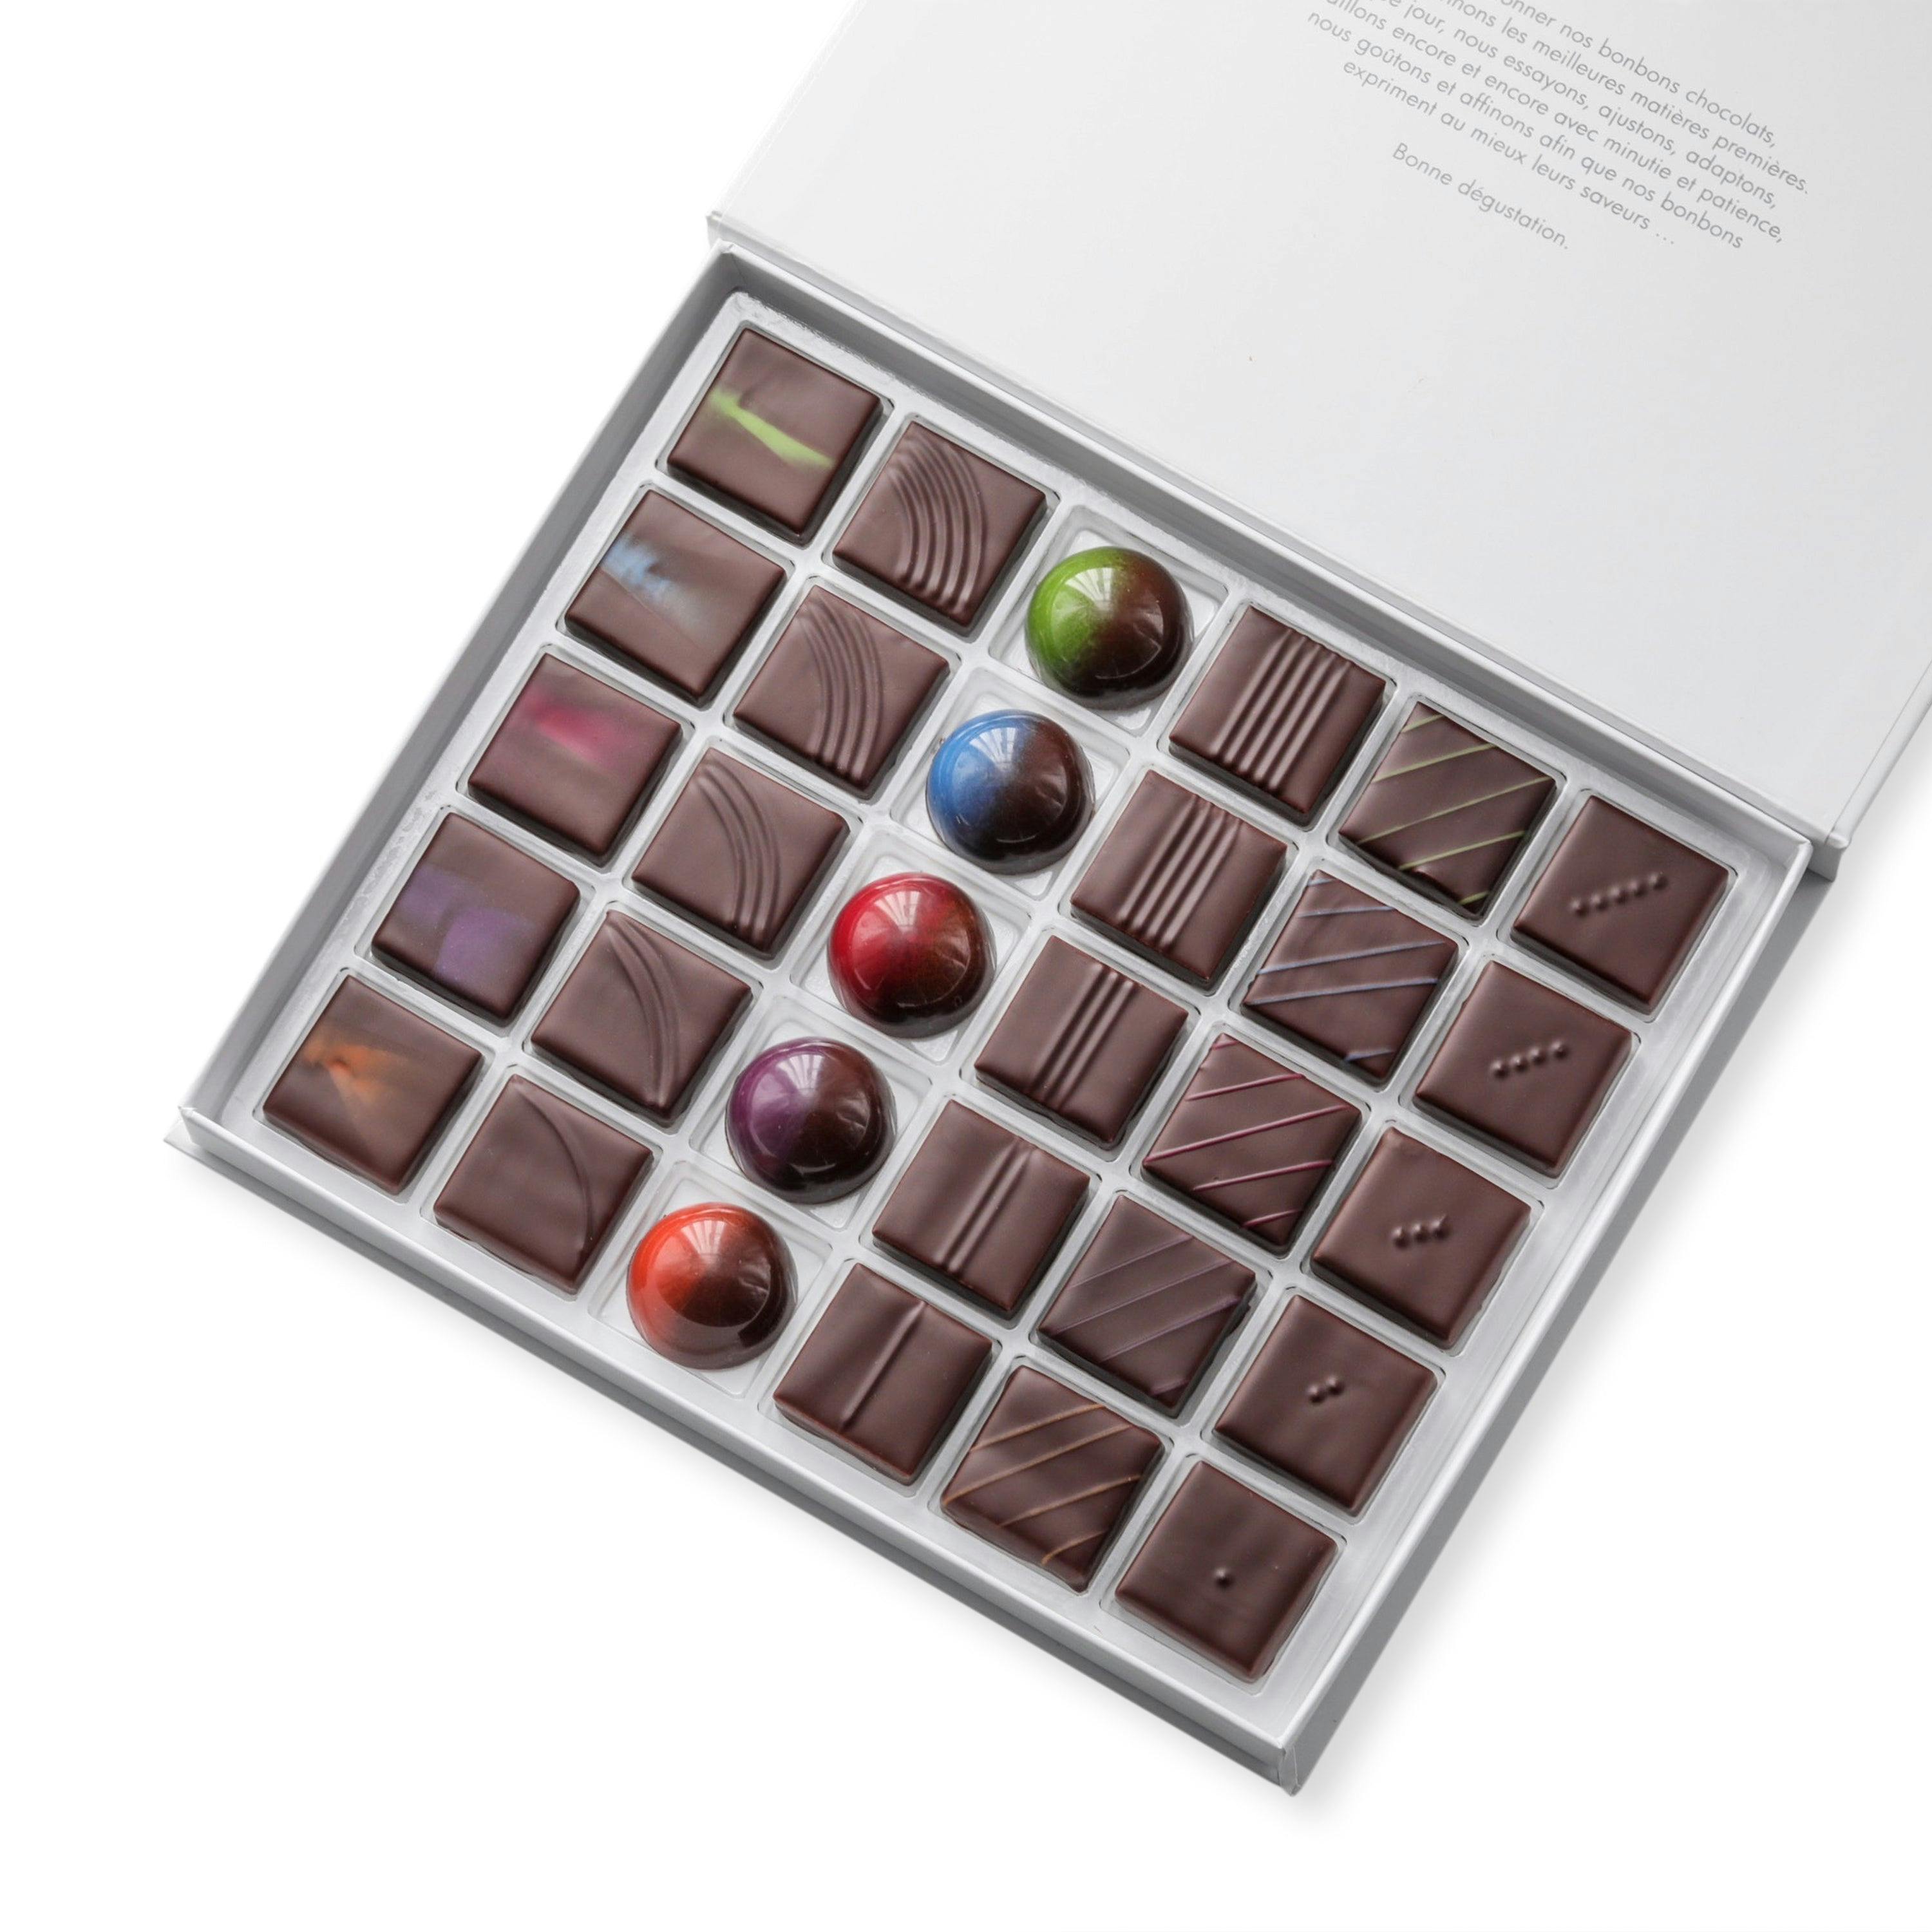 Coffret signature disponible en coffrets de 30/60 chocolats - Vincent Vallée chocolatier champion du monde